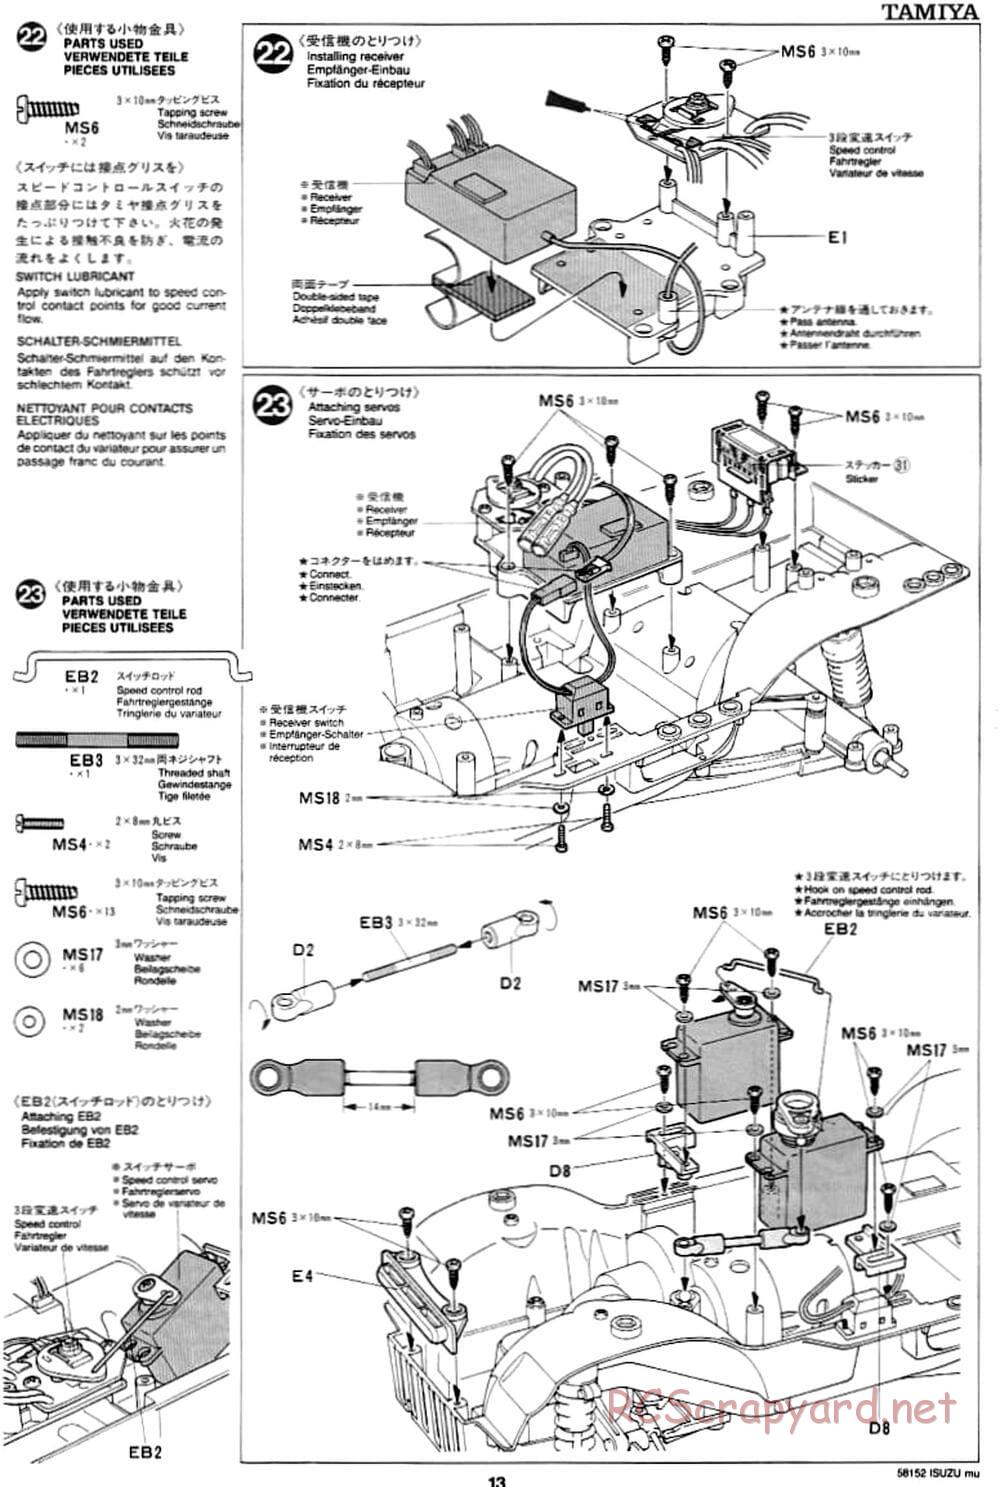 Tamiya - Isuzu Mu - CC-01 Chassis - Manual - Page 13